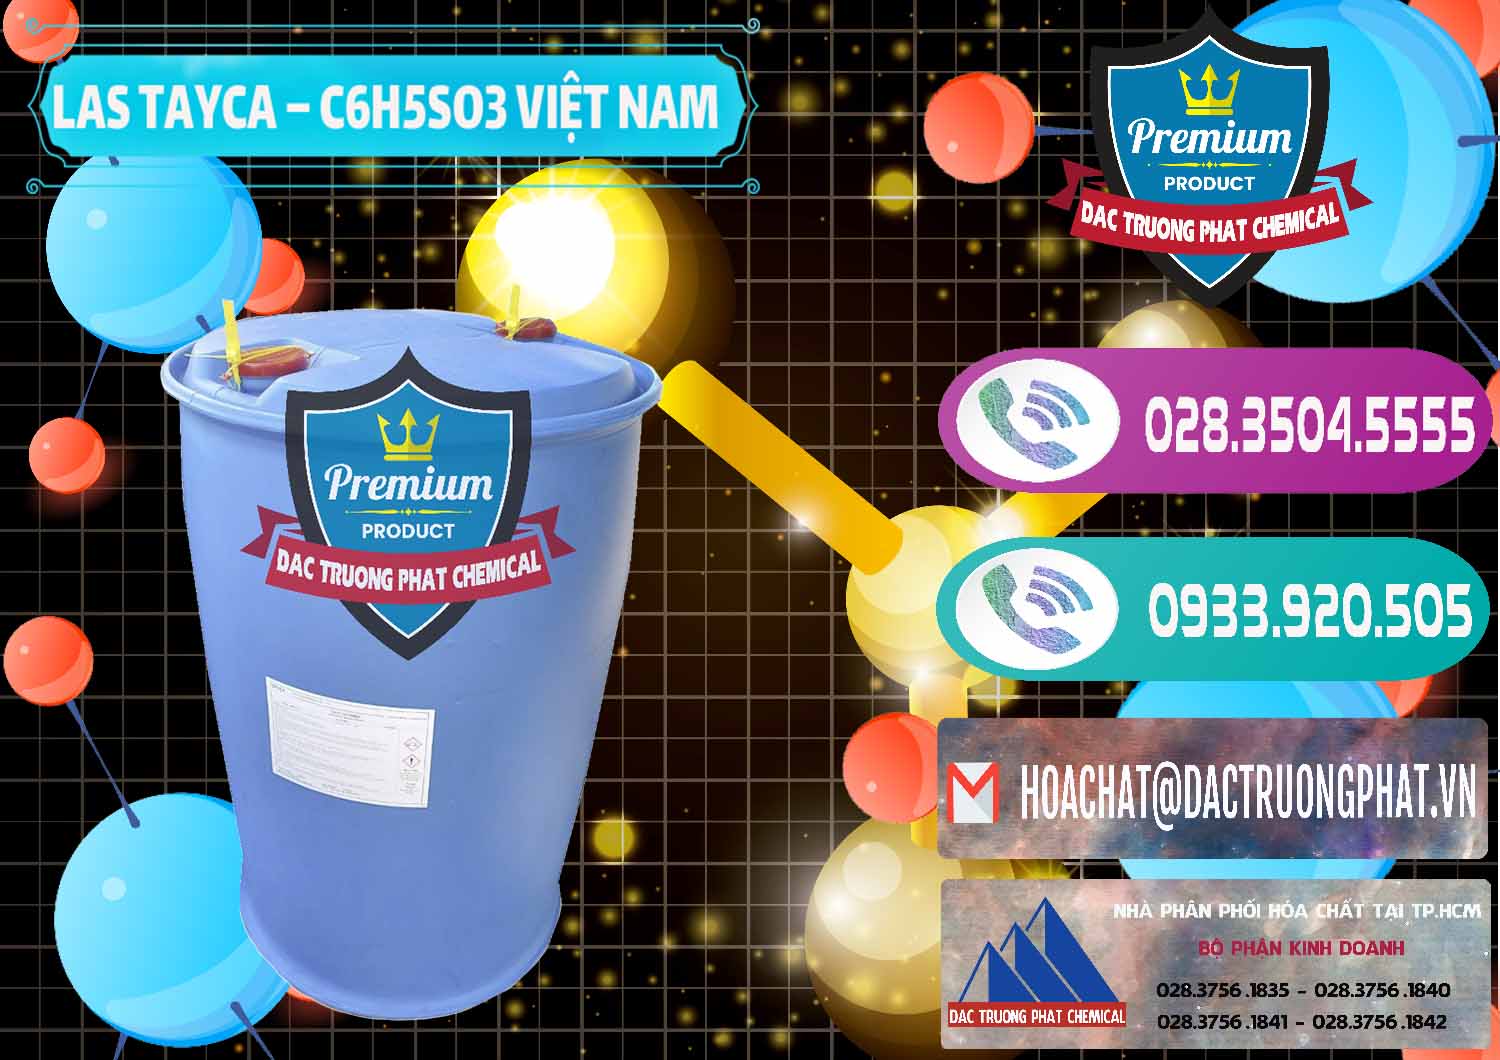 Cty chuyên kinh doanh _ cung cấp Chất tạo bọt Las Tayca Việt Nam - 0305 - Đơn vị chuyên kinh doanh & phân phối hóa chất tại TP.HCM - hoachatxulynuoc.com